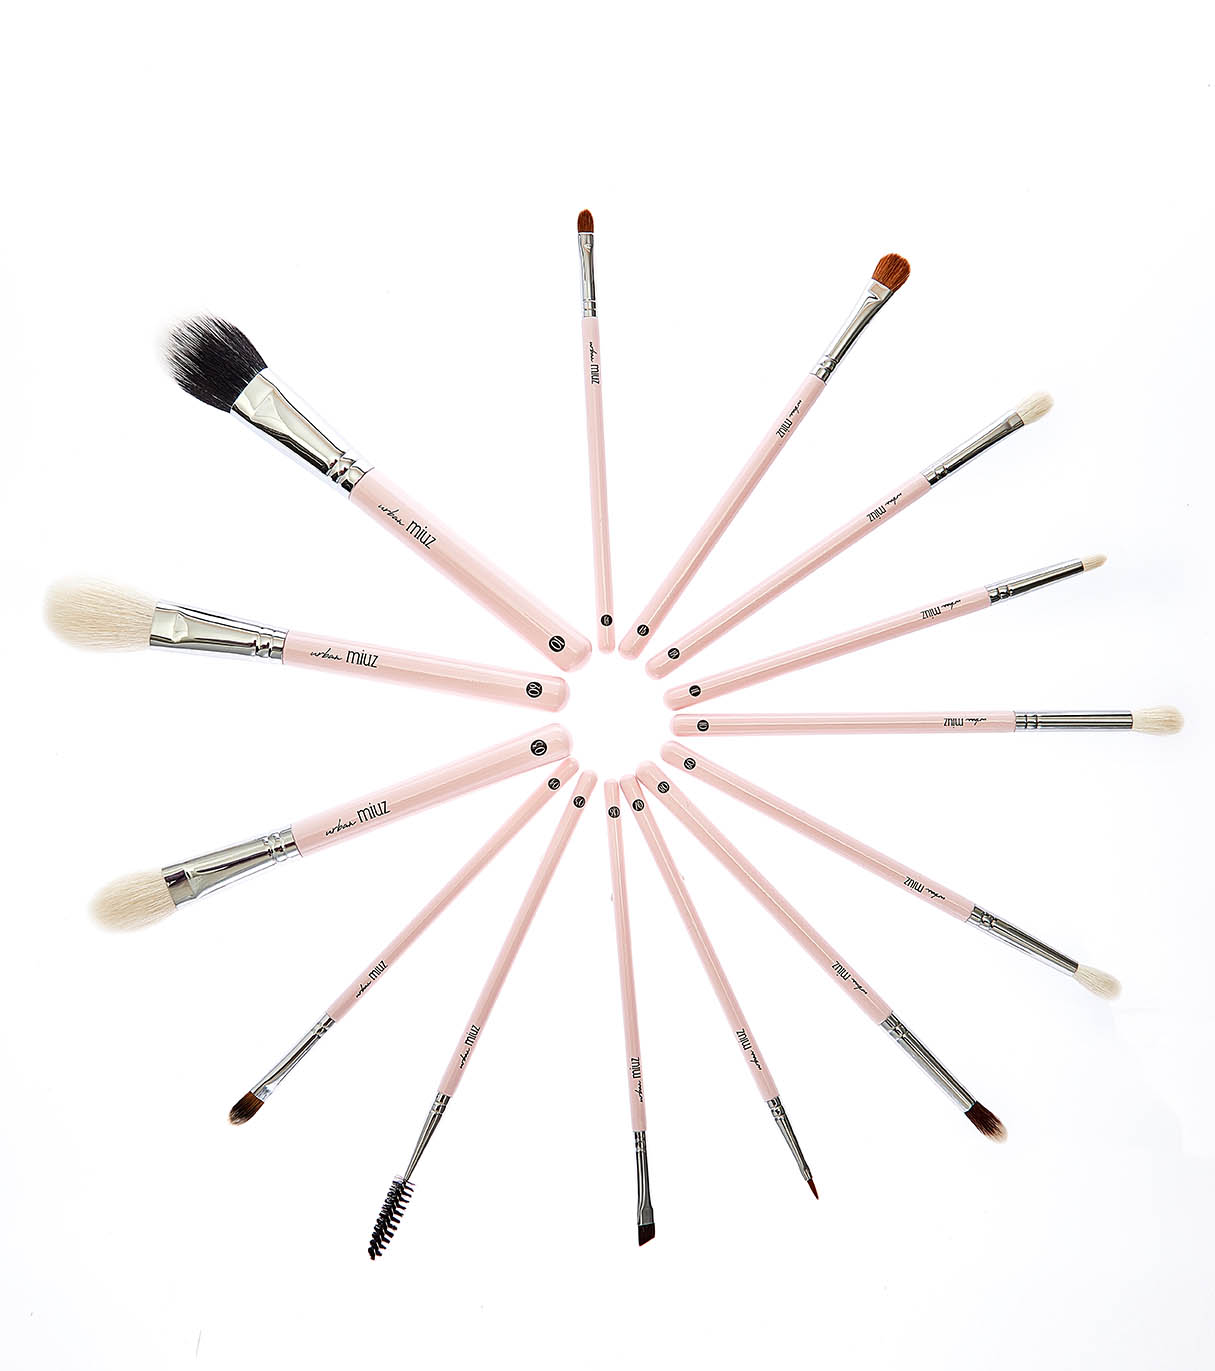 Esti Makeup Artist si cauti mai multe informatii despre pensule? Citeste pe Blogul Urban Miuz, Întreținerea și Curățarea Pensulelor de Machiaj